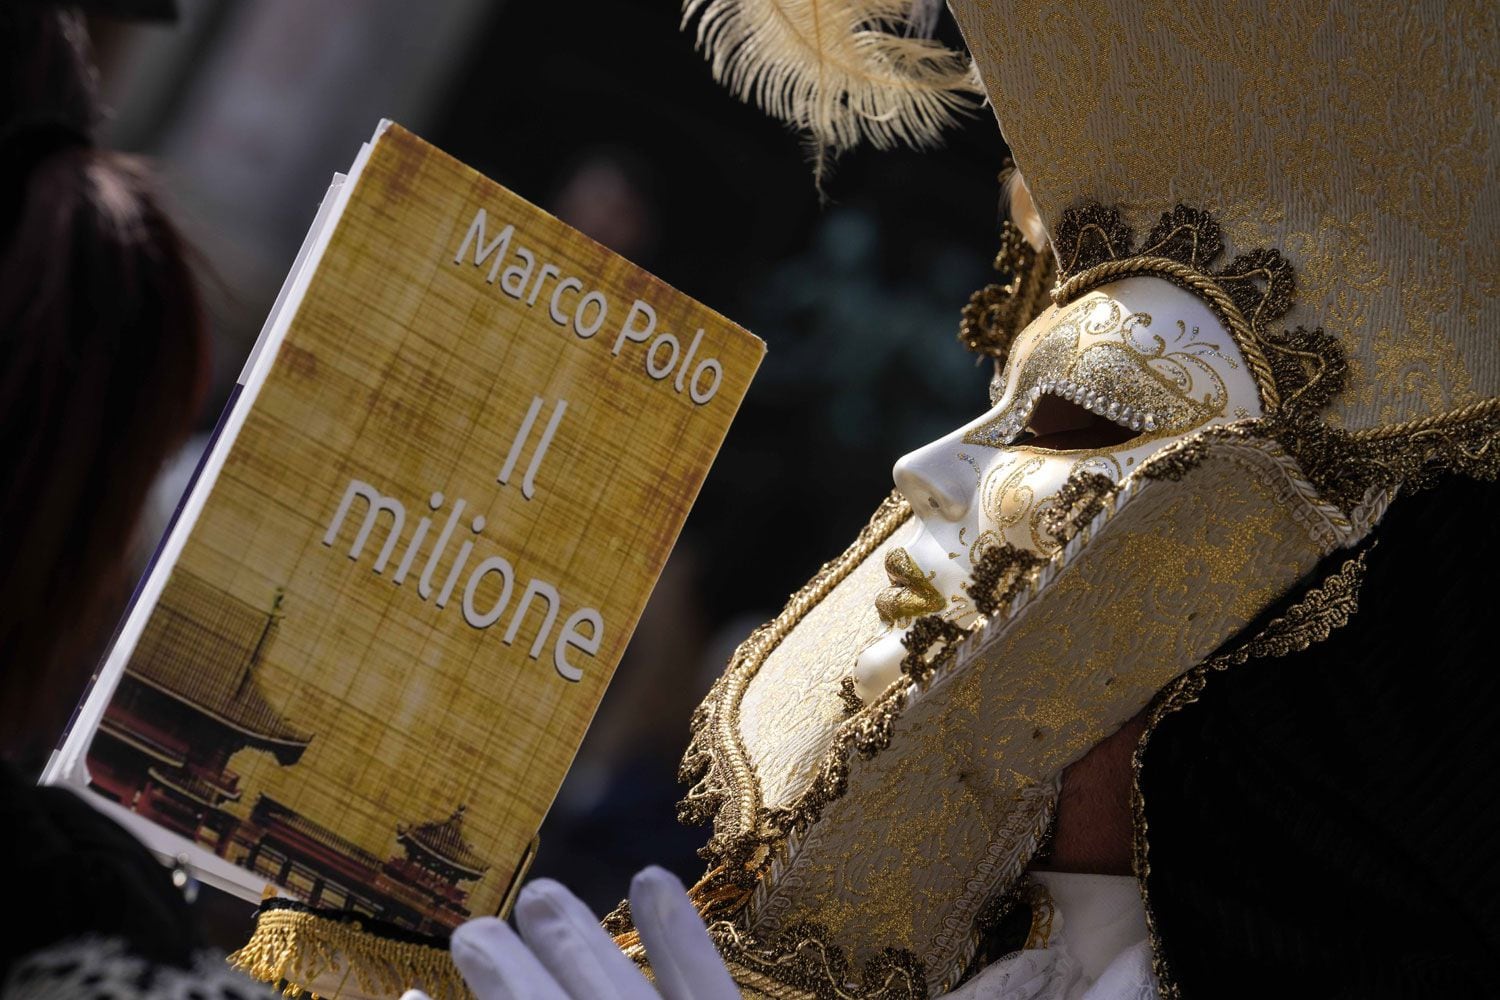 Un hombre, ataviado con una máscara, sostiene una réplica de “Los viajes de Marco Polo” ("Il milione", en italiano), que relata los viajes del explorador por Asia.